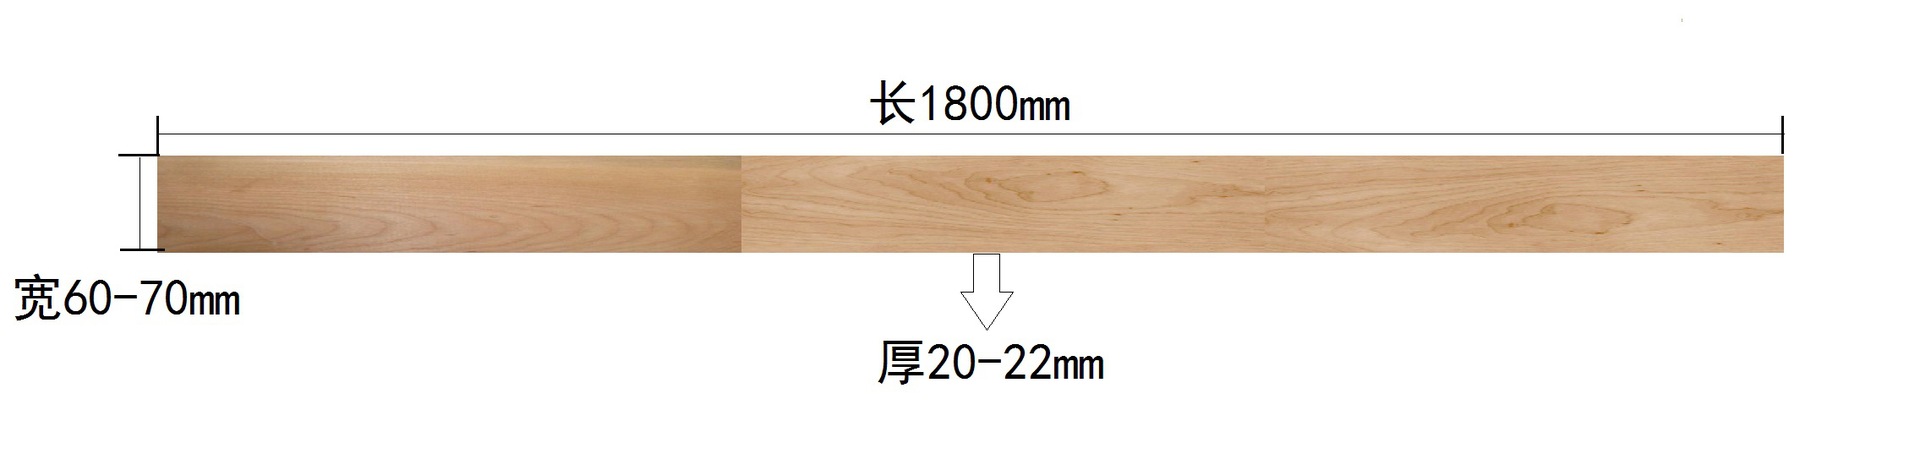 榉木A级运动木地板篮球木地板示例图2